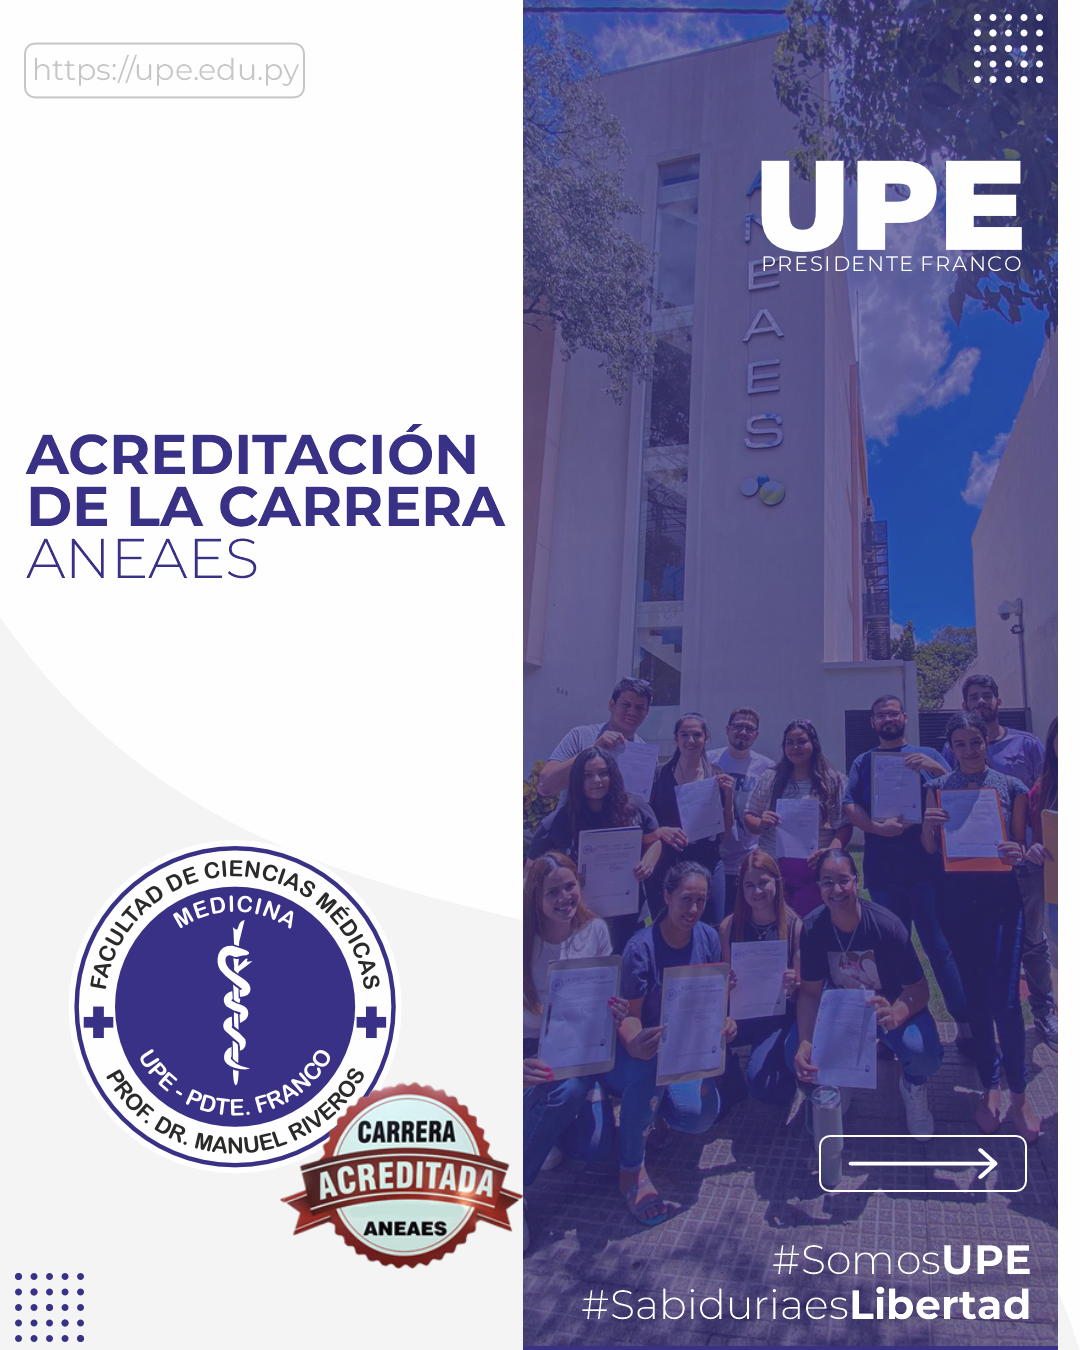 Carrera de Medicina de la UPE Presidente Franco Acreditada por la ANEAES